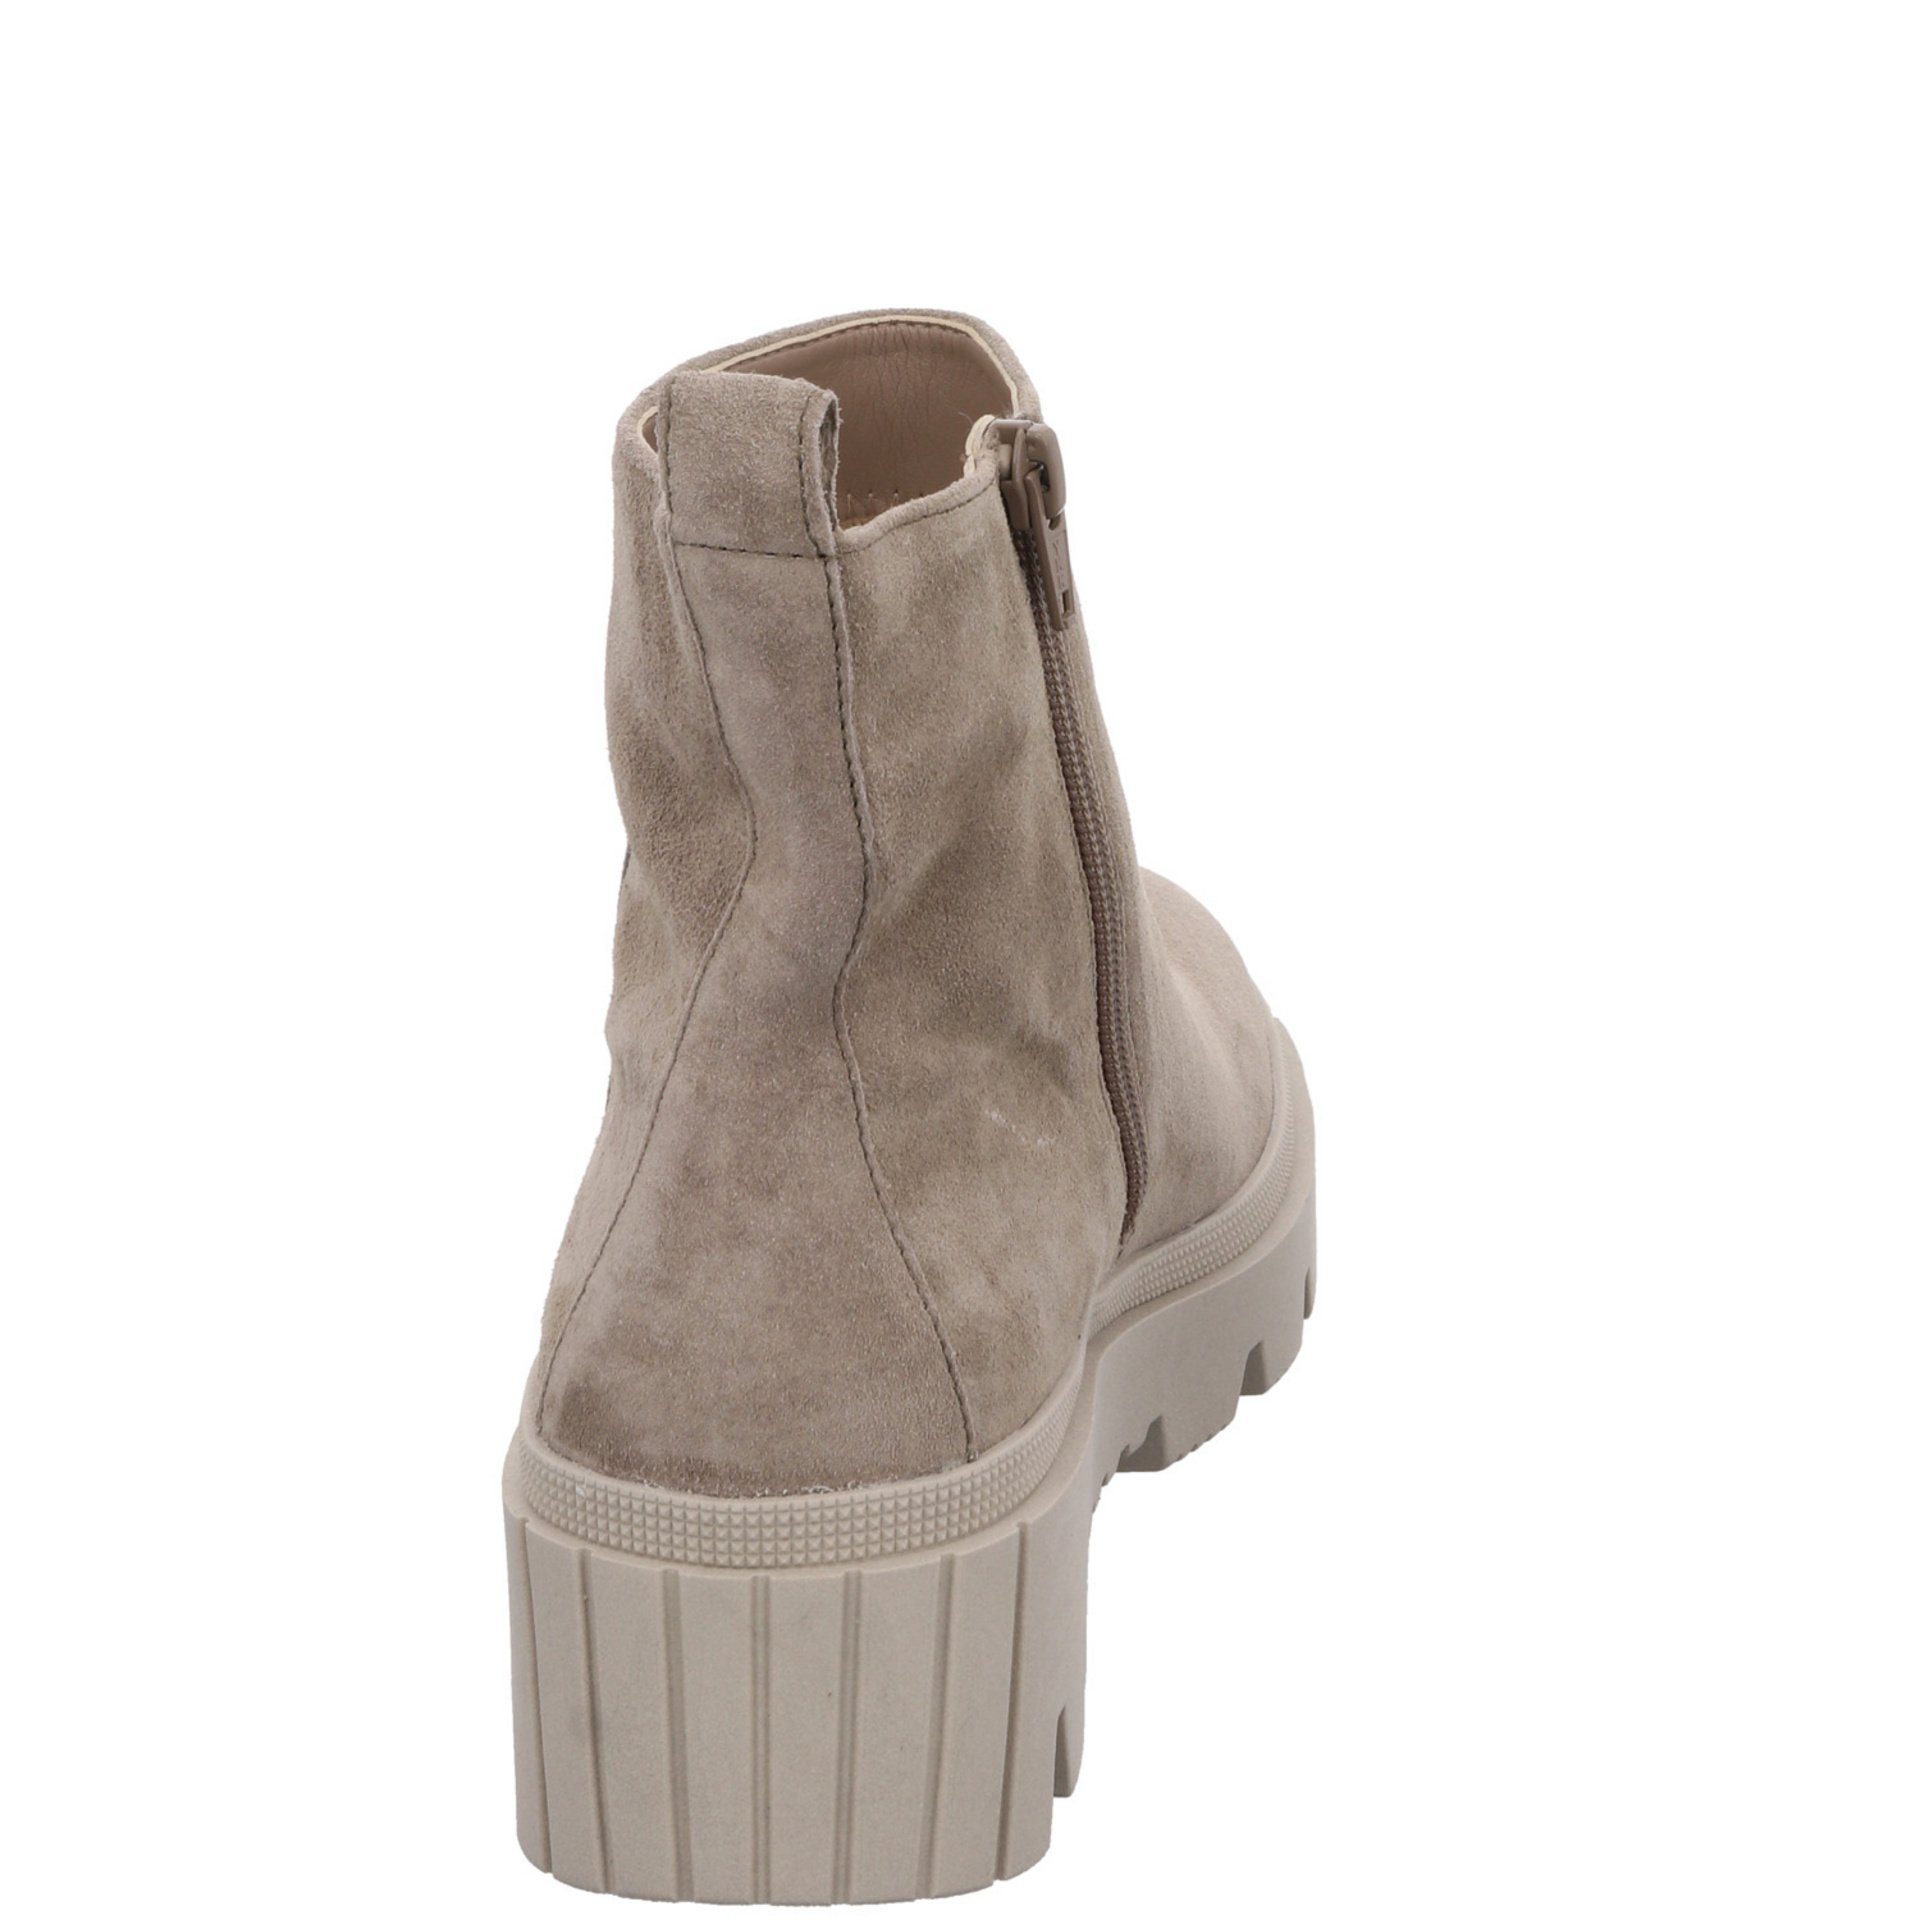 Boots (dust) Veloursleder Damen Schuhe Stiefelette salbei (07301882) Stiefeletten Elegant Gabor Freizeit